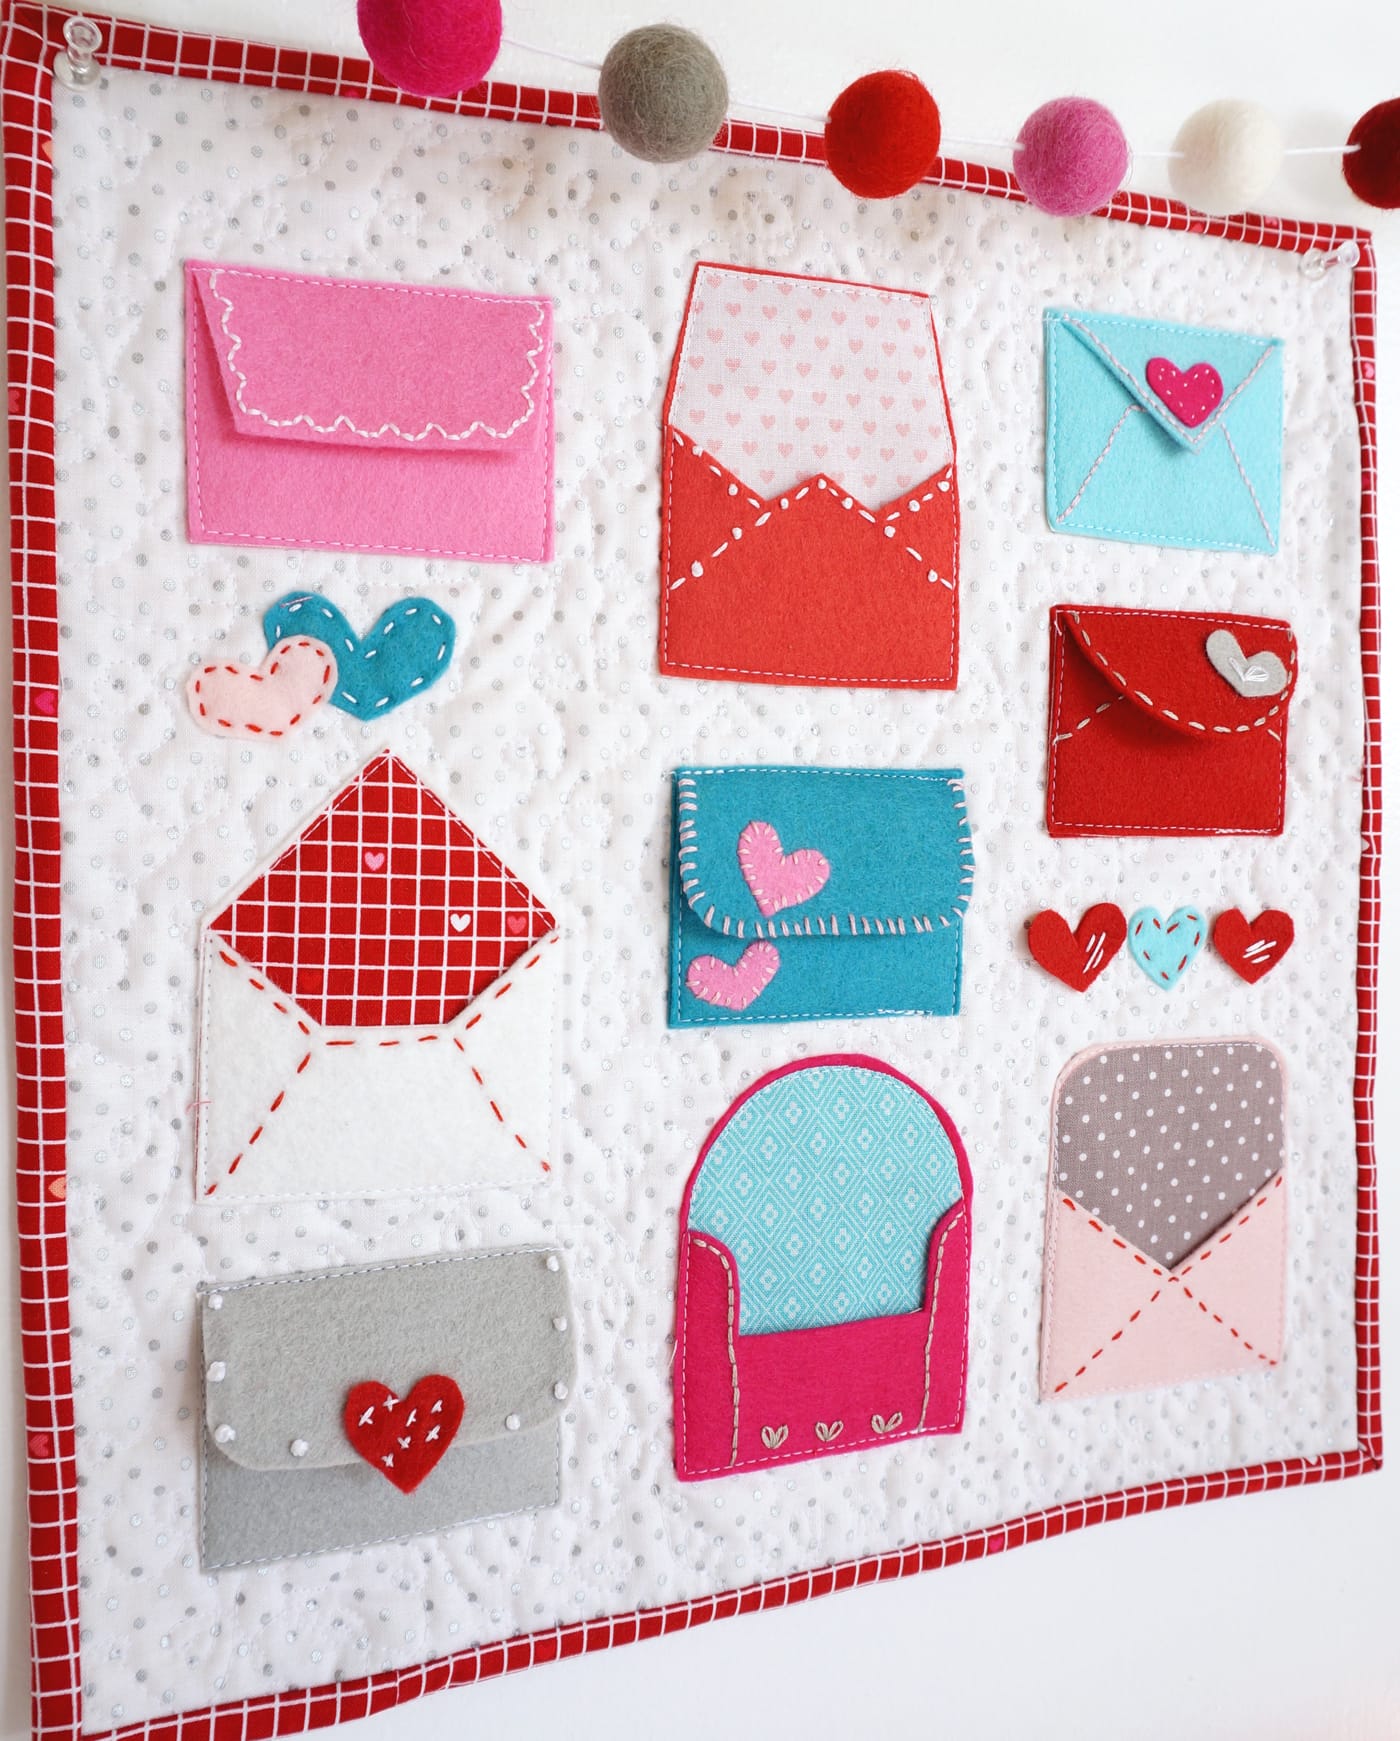 Un modèle gratuit pour "Love Notes", une idée artisanale pour la Saint-Valentin. Un tutoriel sur les enveloppes en feutre - avec broderie à la main et appliques en feutre #ValentinesDay #ValentinesDayCraft #FeltEnvelope #FeltCrafts #FeltProject #EmbroideryHoopArt